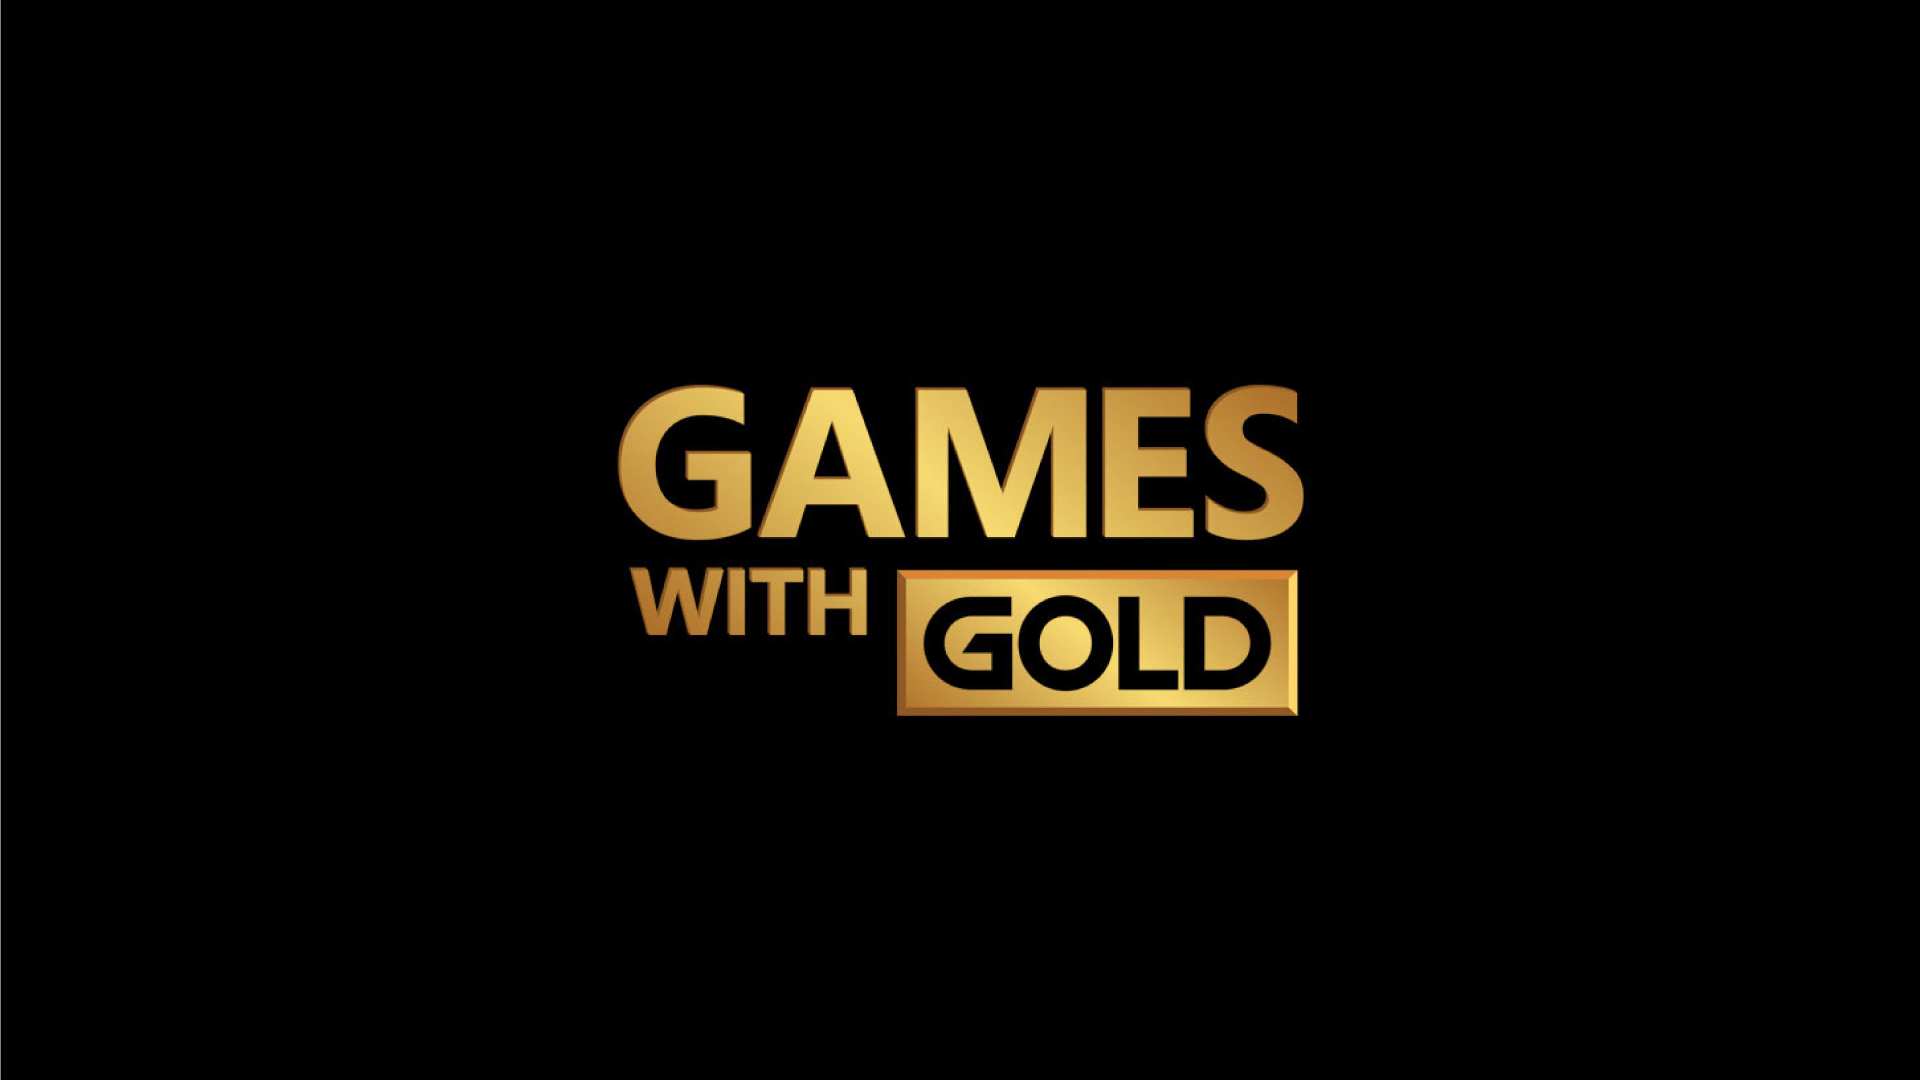 Сегодня последняя возможность забрать эти 2 игры бесплатно по Games With Gold